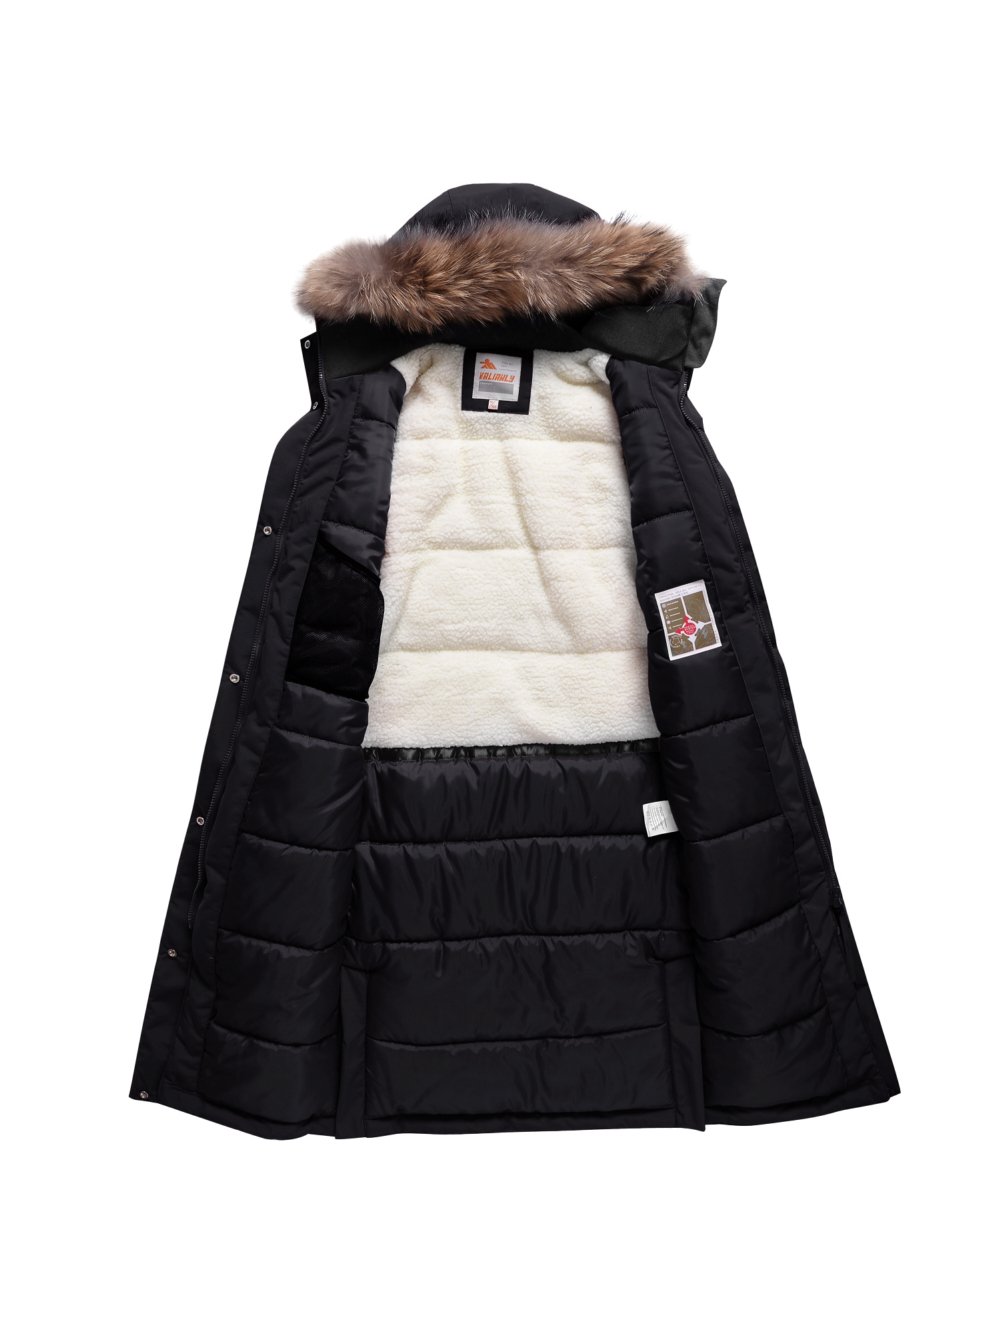 Купить куртку парку для девочки оптом от производителя недорого в Москве 9344Ch 1